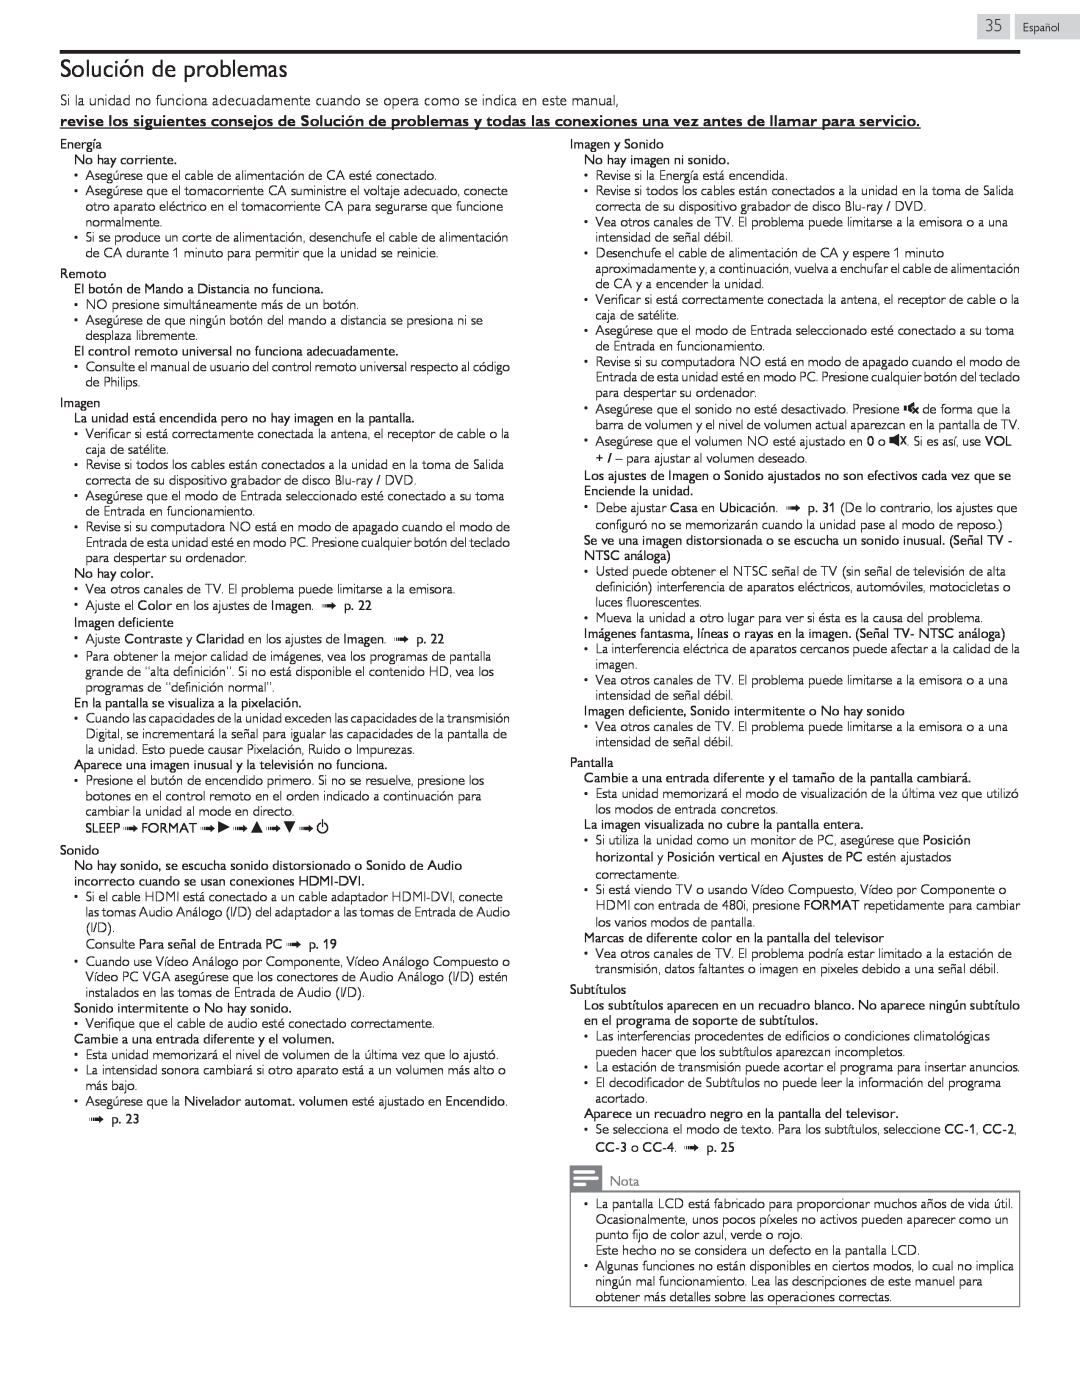 Philips 40PFL4709 user manual Solución de problemas, Nota 